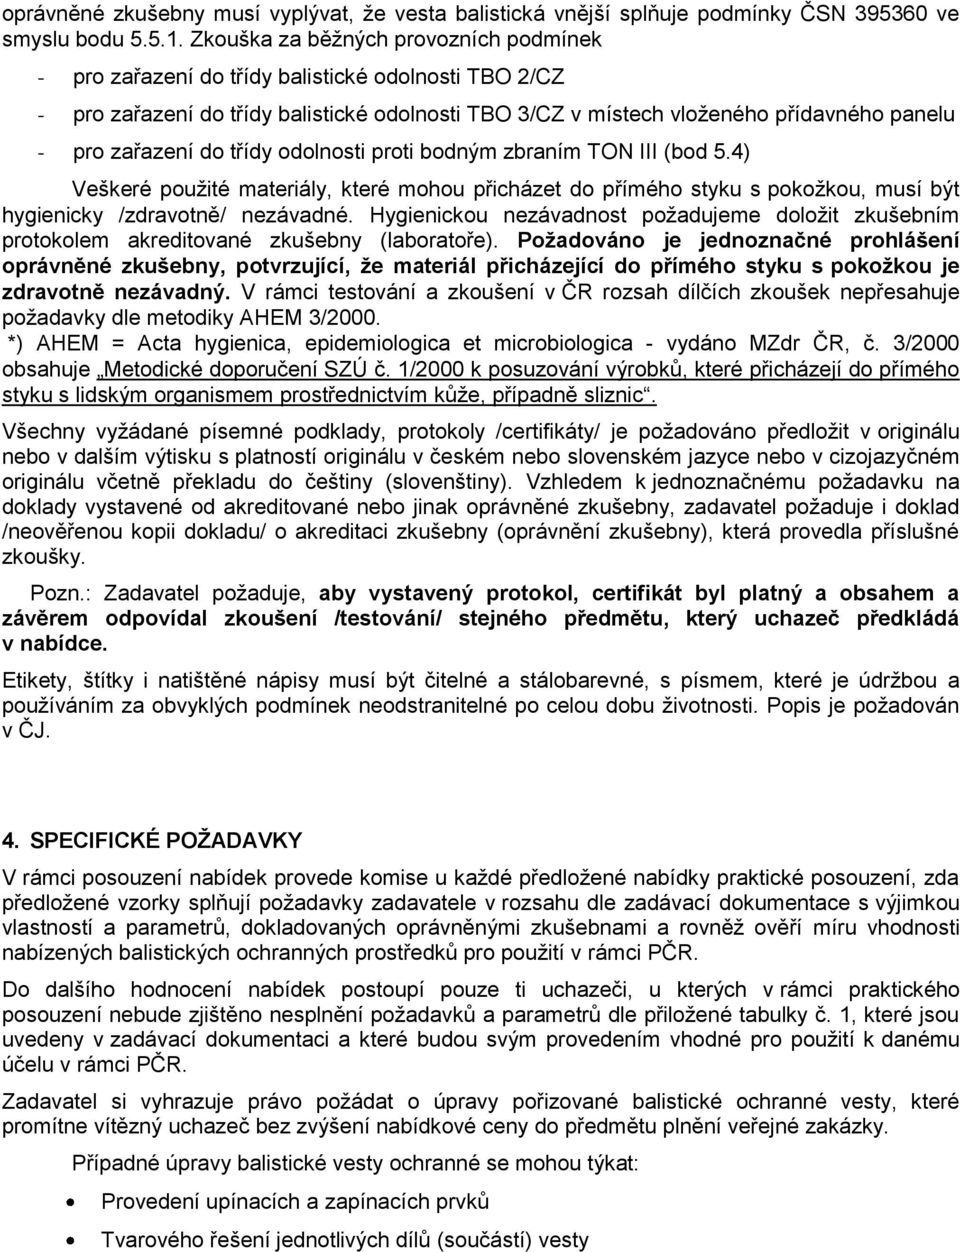 TECHNICKÁ SPECIFIKACE - PDF Free Download